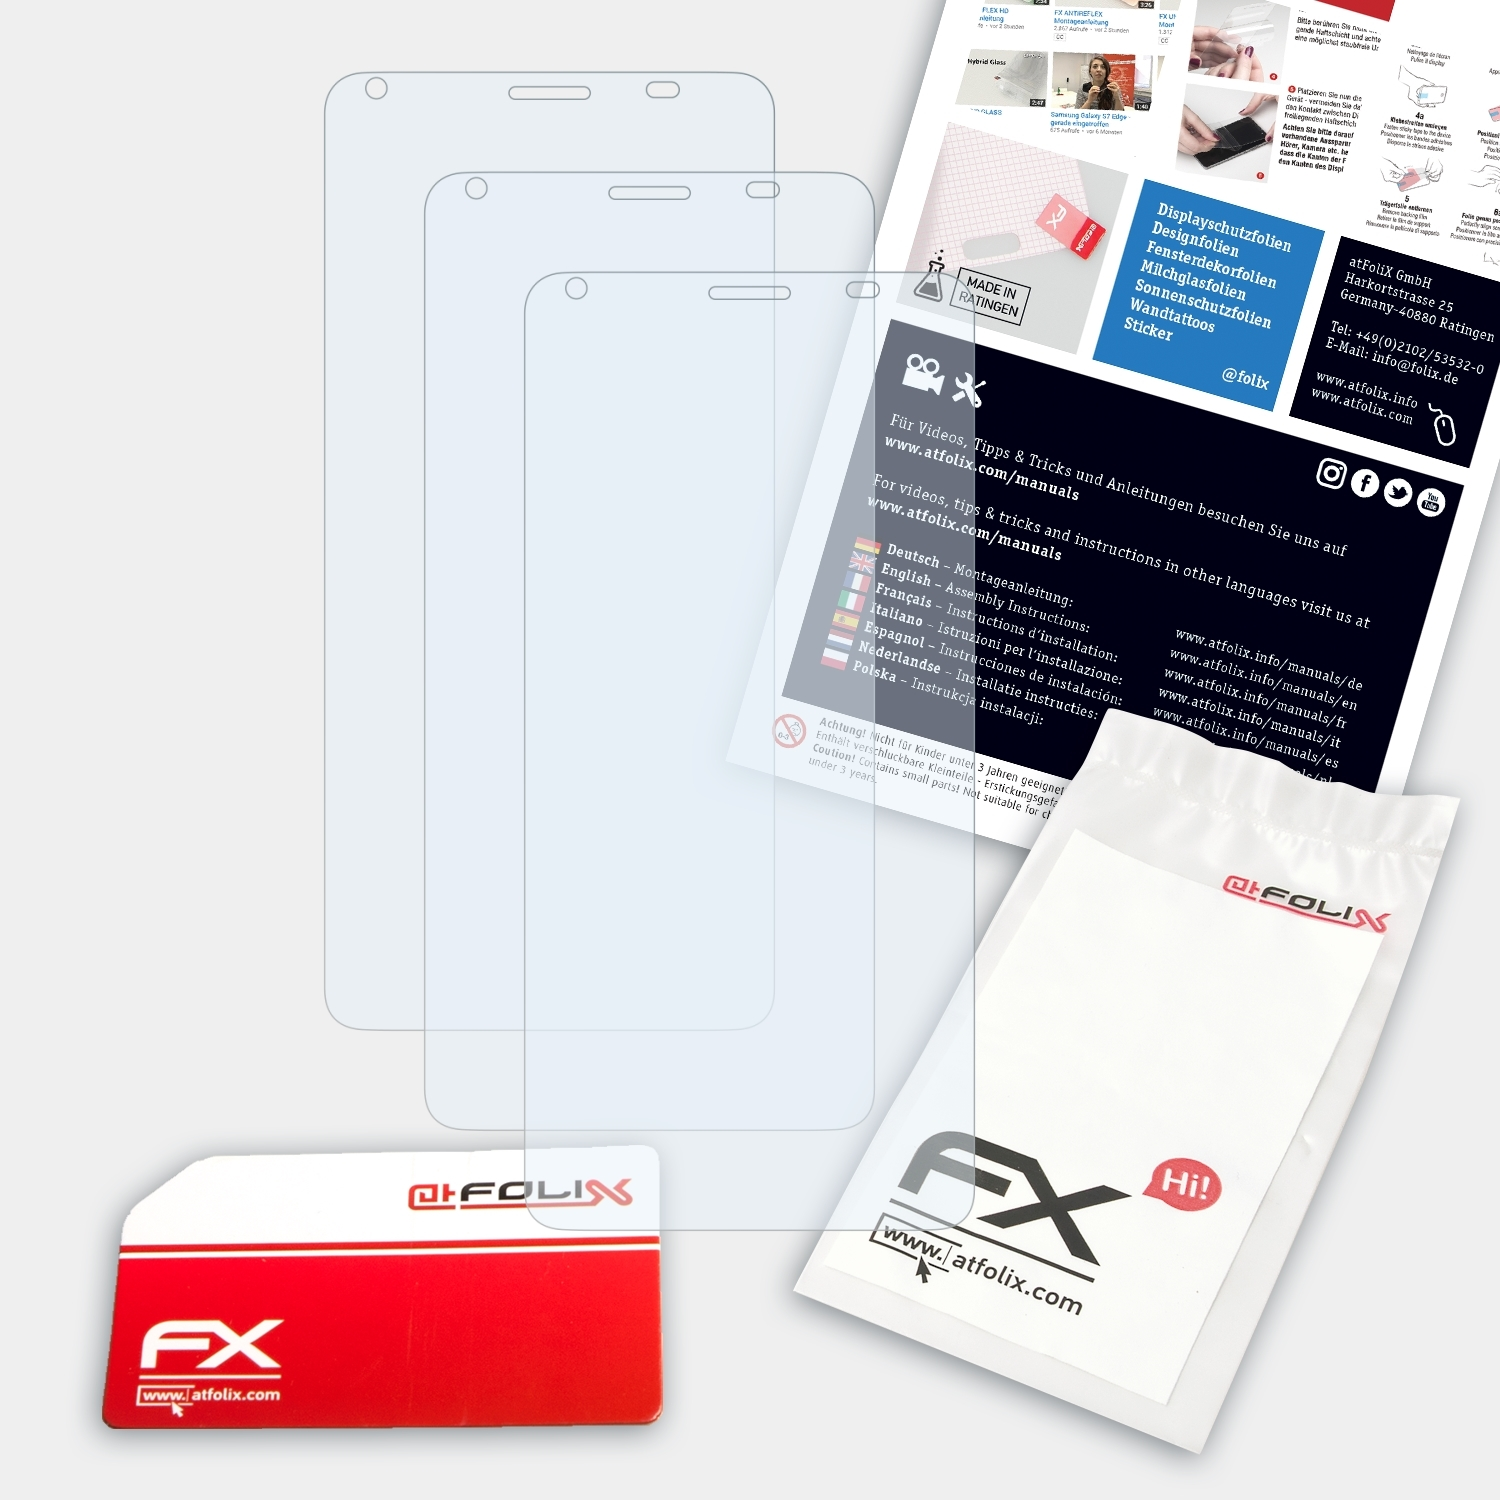 FX-Clear Pro) 3x XM200 ATFOLIX Landvo Displayschutz(für